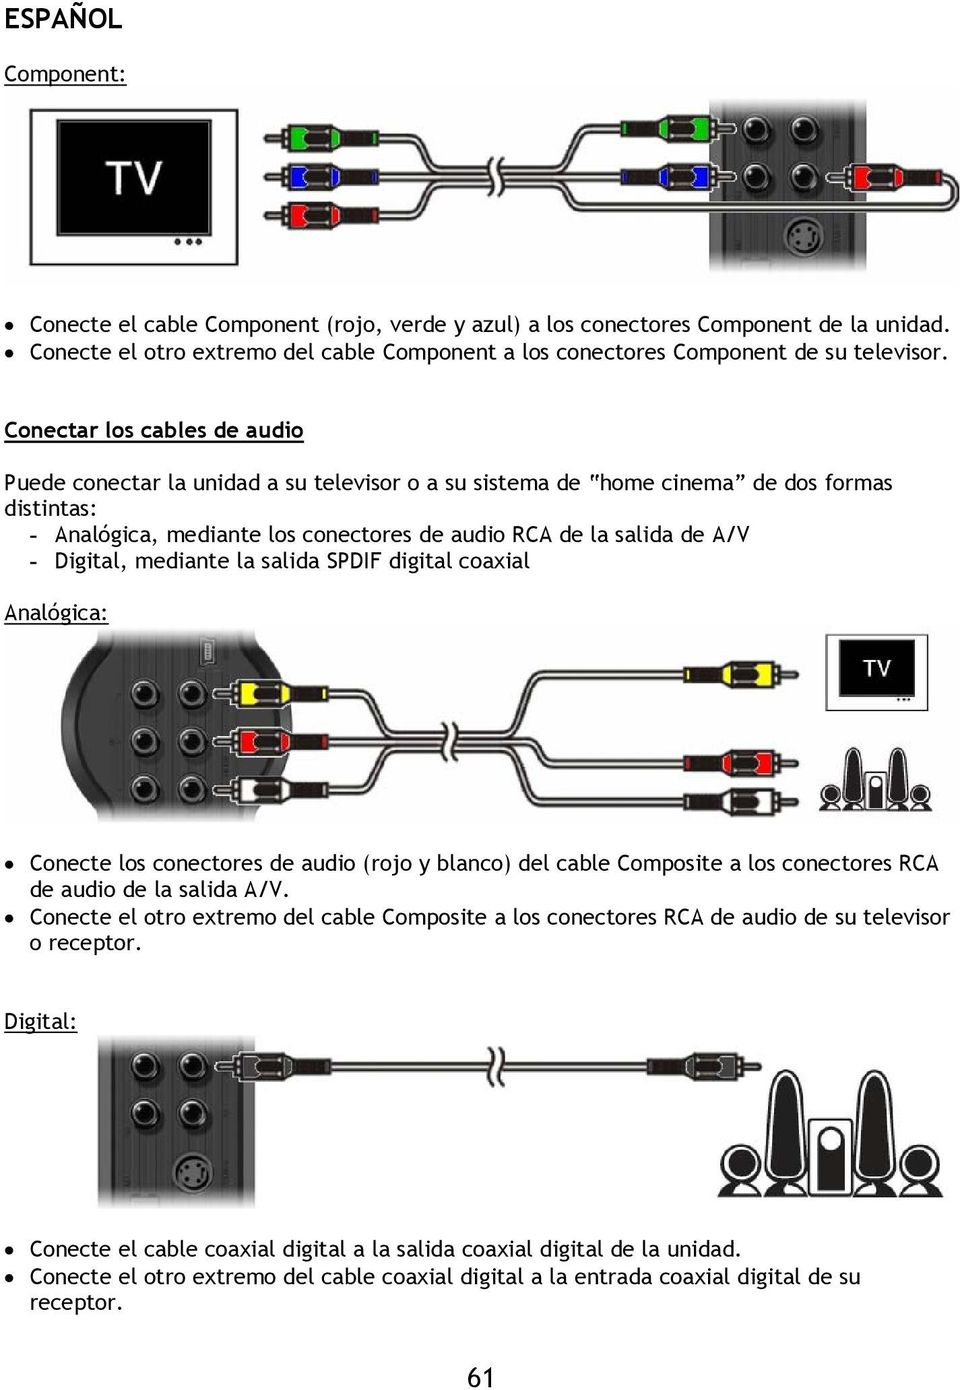 Digital, mediante la salida SPDIF digital coaxial Analógica: Conecte los conectores de audio (rojo y blanco) del cable Composite a los conectores RCA de audio de la salida A/V.